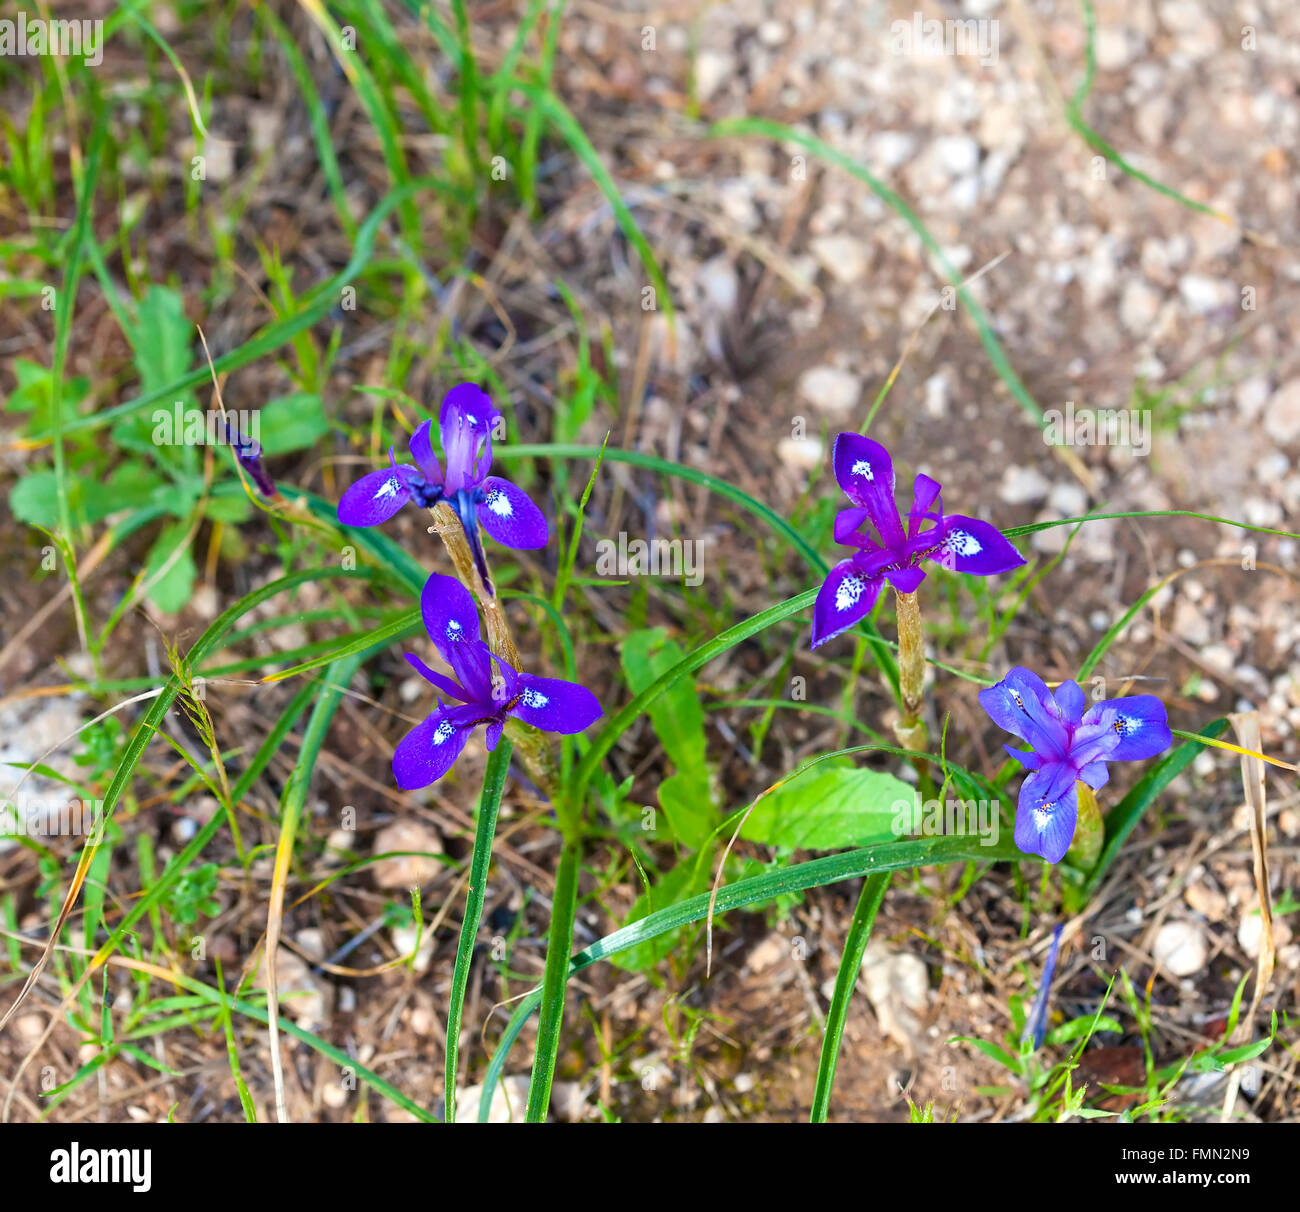 Mehrere Wild Iris Blumen blühen auf dem steinigen Boden Stockfoto